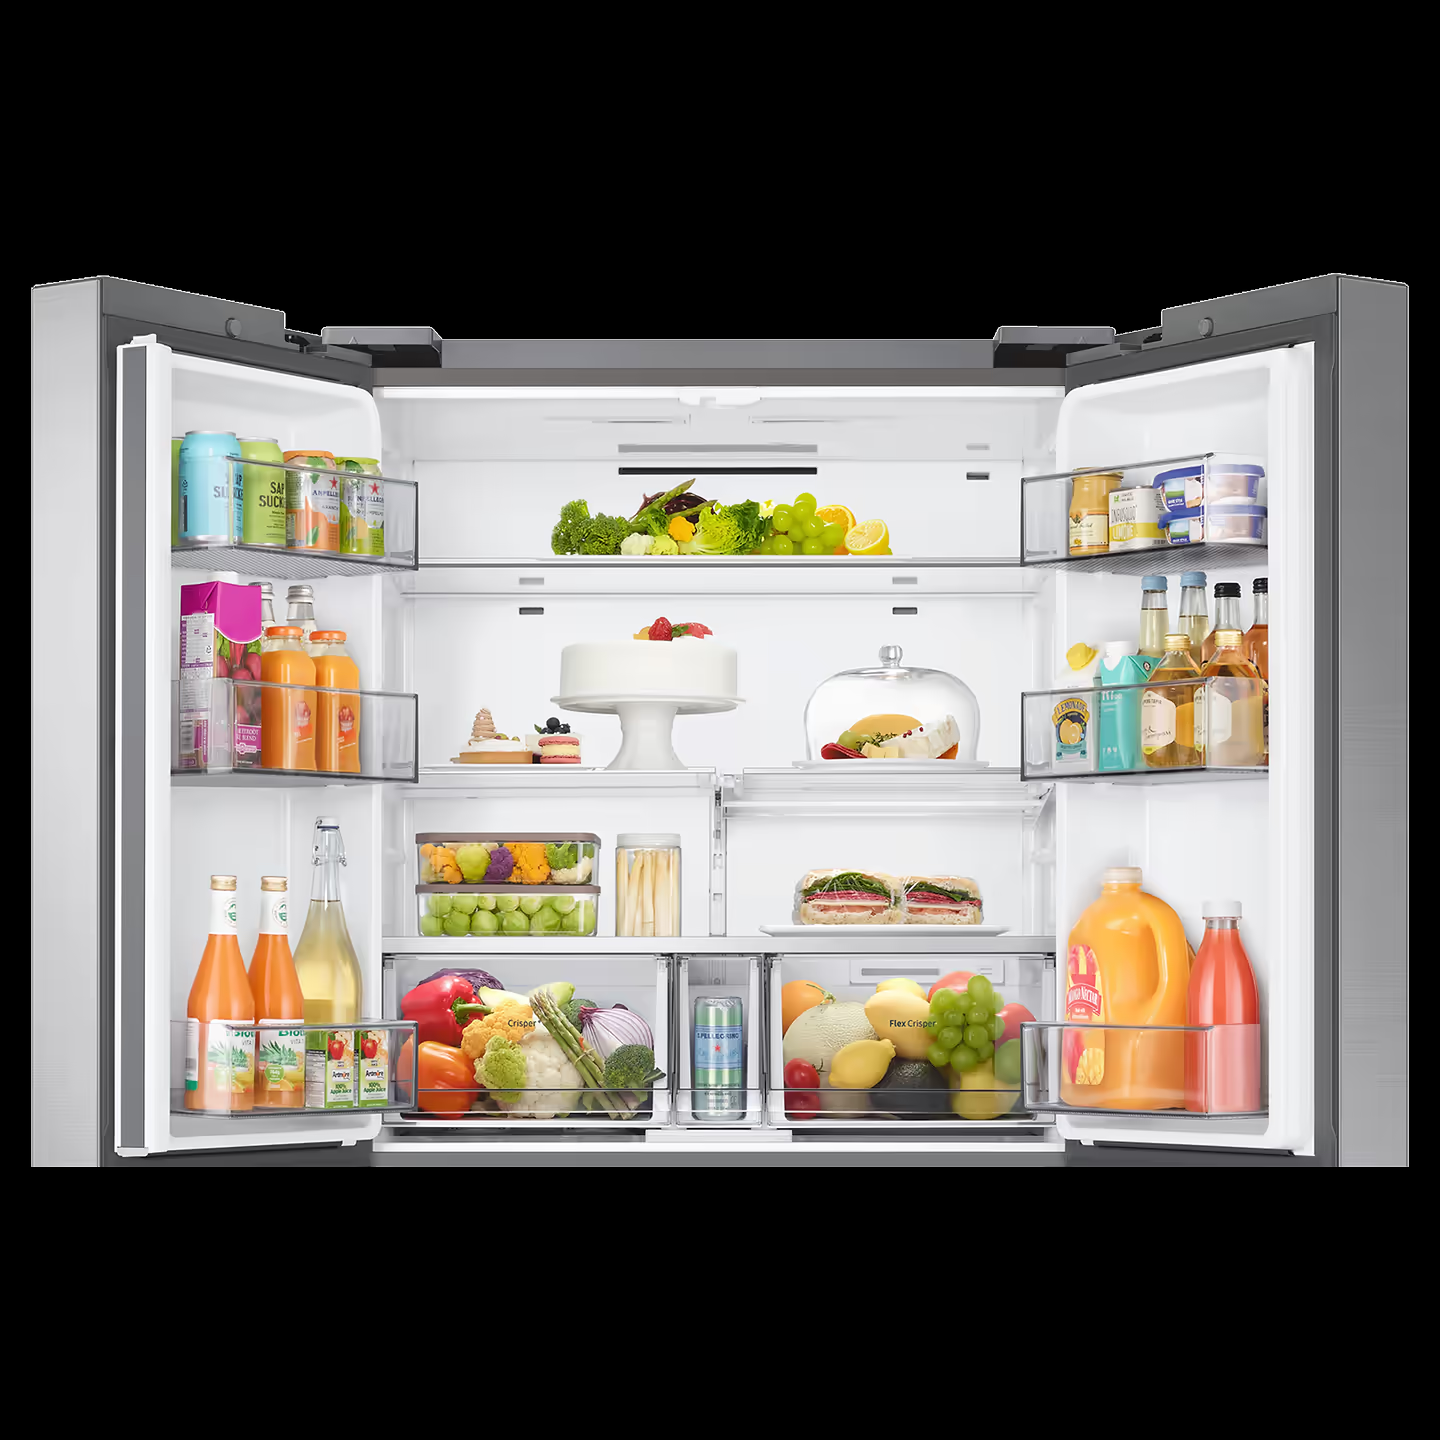 Samsung Refrigerator RF70A90T0SL 705L Dual Flex Zone Side By Side